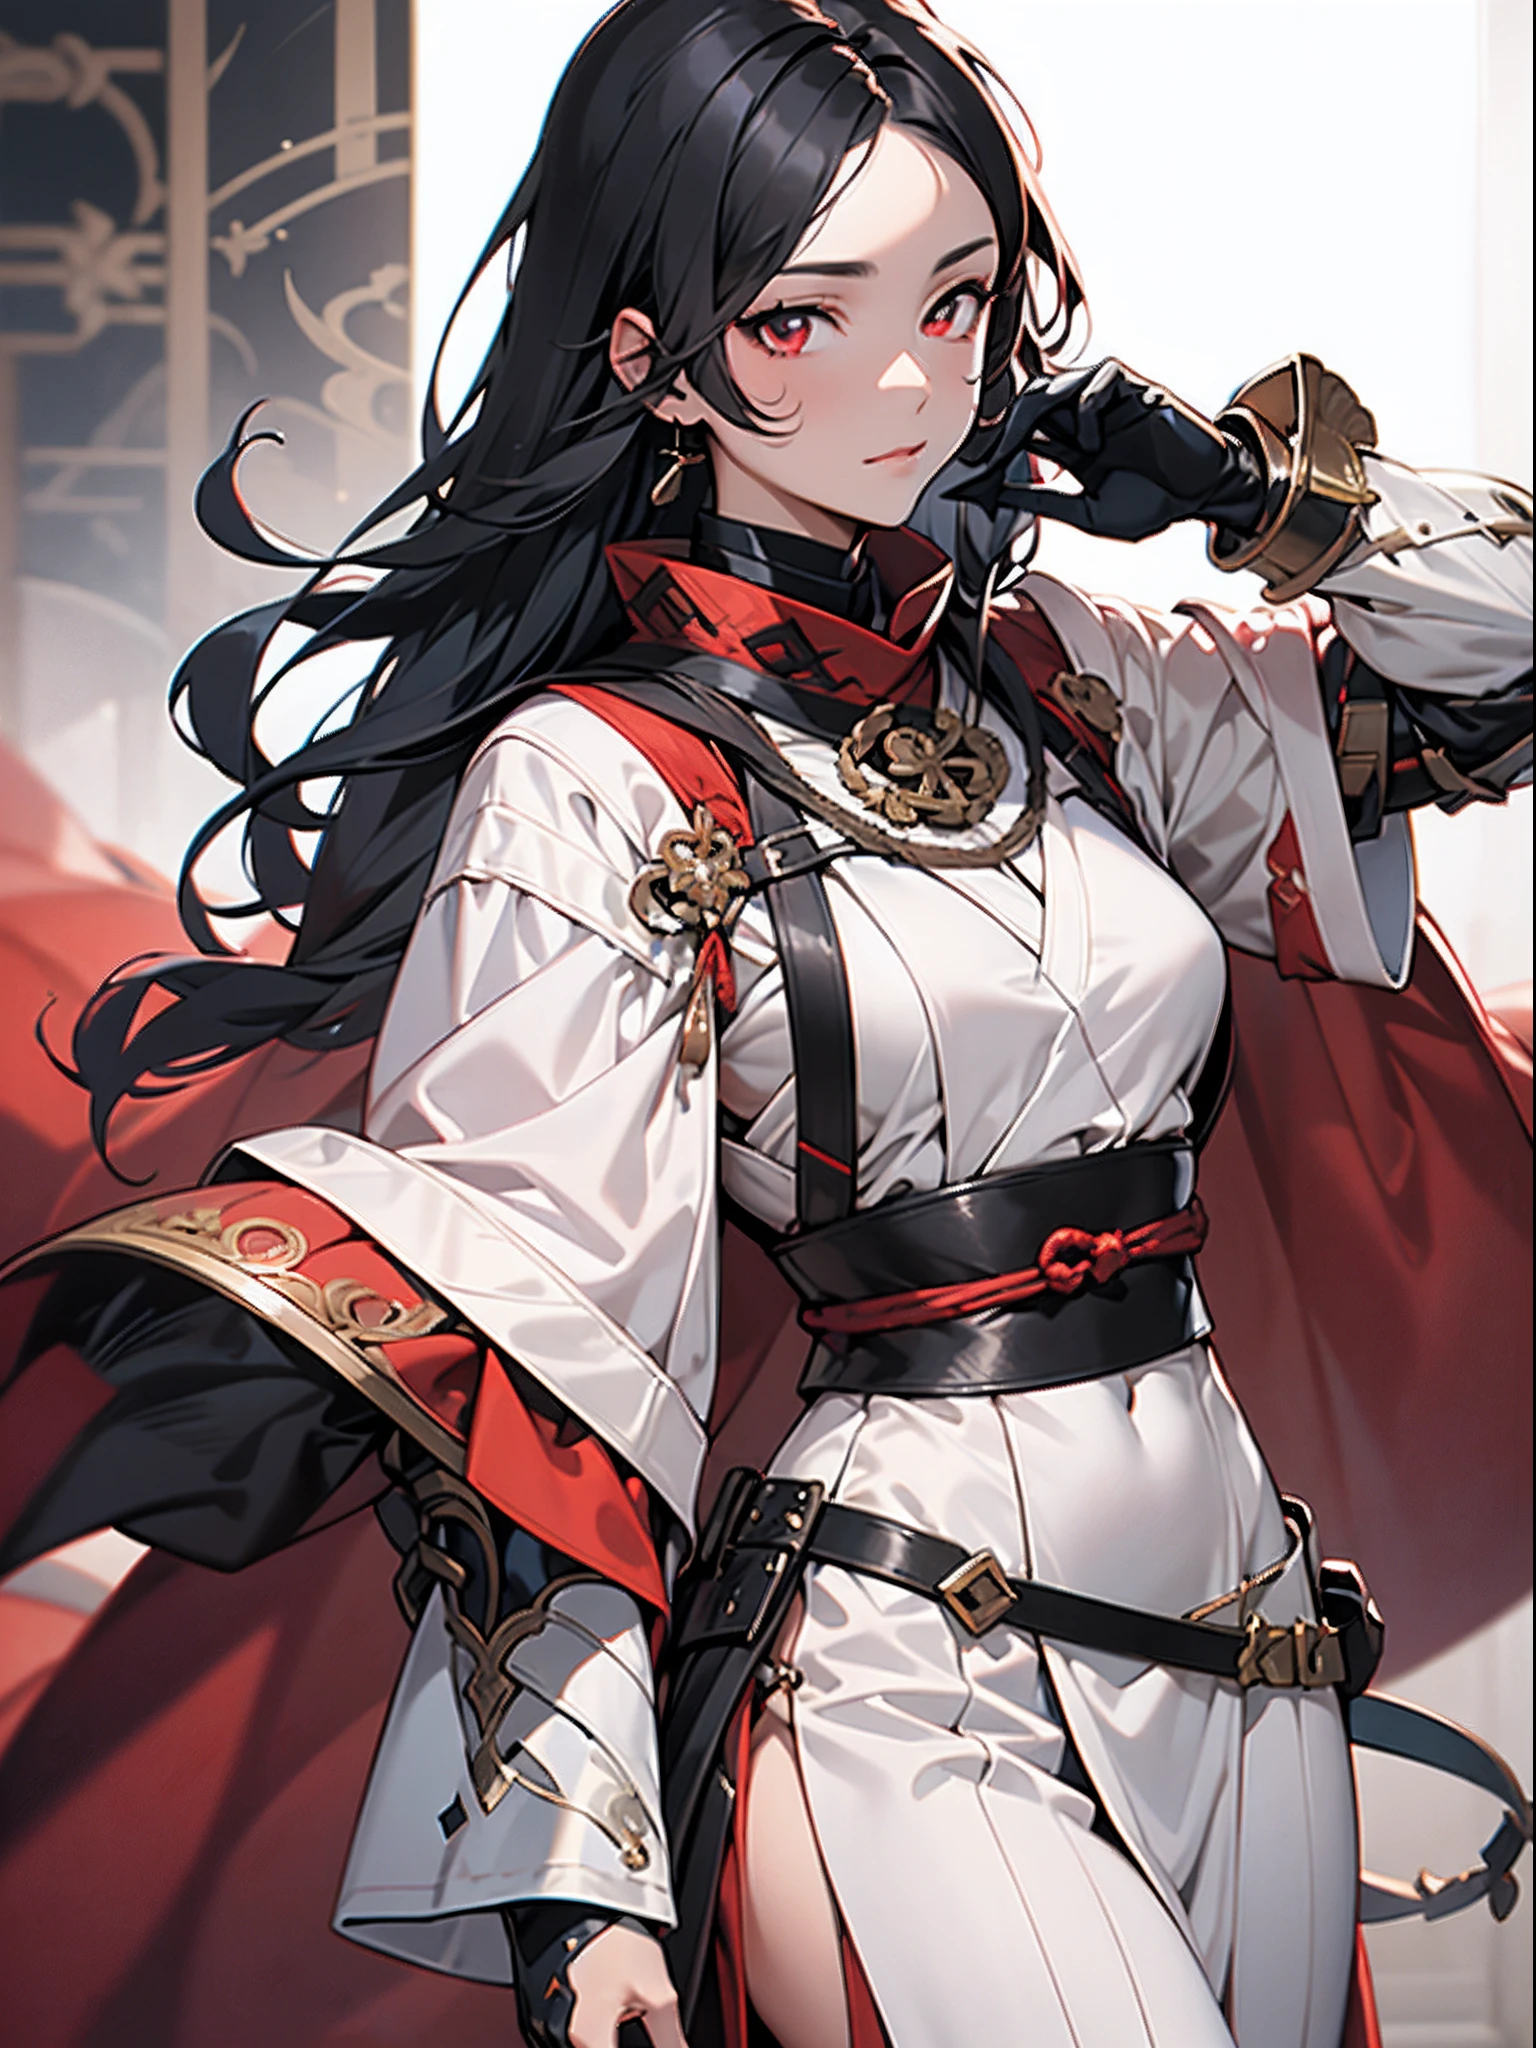 1명의 소녀,onmyouji,수이칸,갑옷,흰색 장식이 있는 붉은 망토,검은색 긴 머리,빨간 눈,검은 건틀렛과 장갑,좋은 손, 완벽한 손